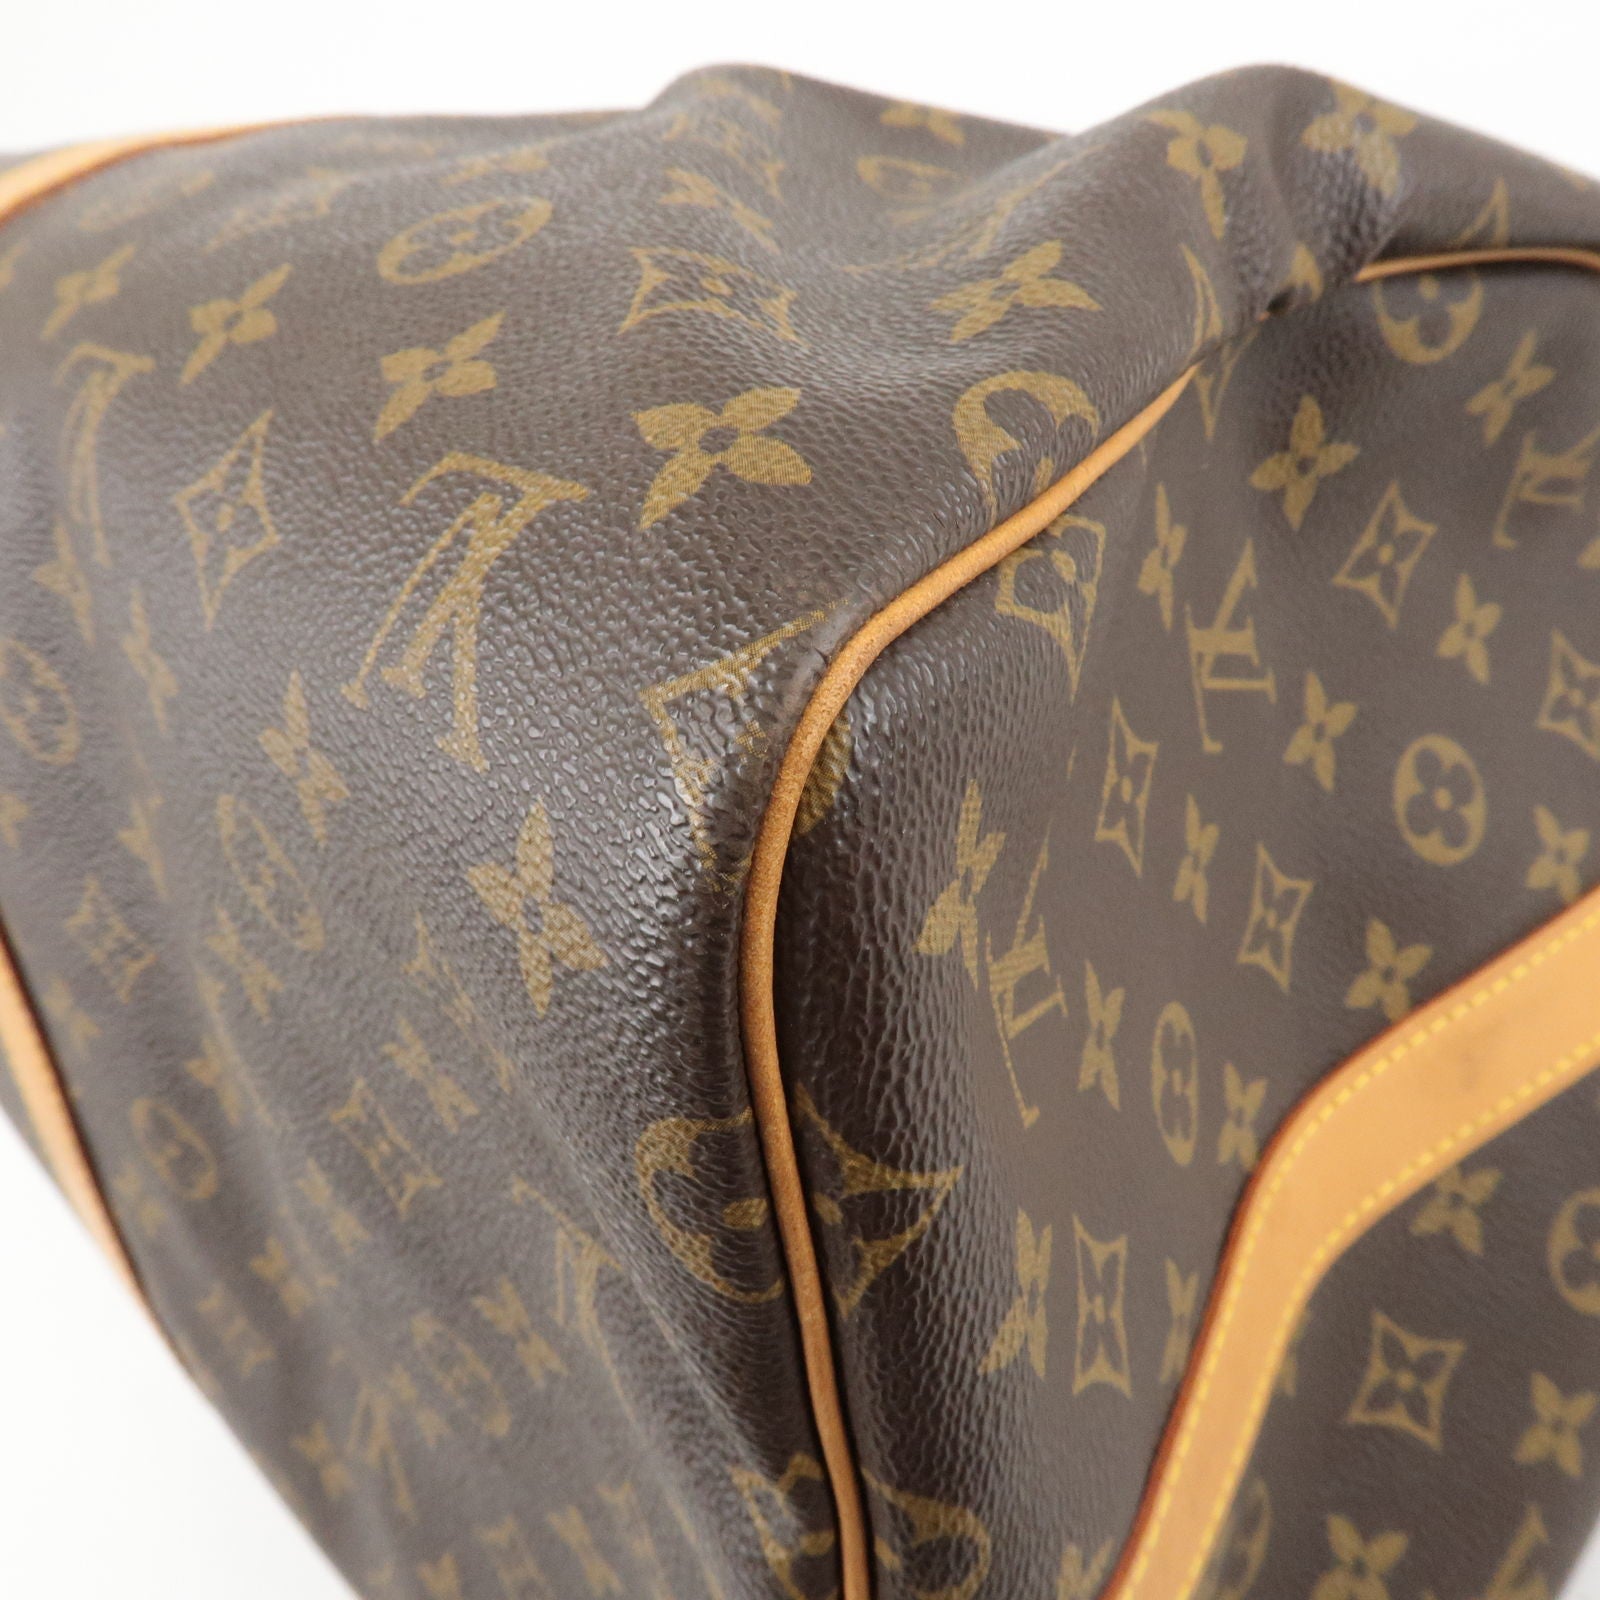 Louis Vuitton Monogram Keepall Bandouliere 55 Boston Bag M41414 Sp1901  Men's Women's Shoulder Key Auction